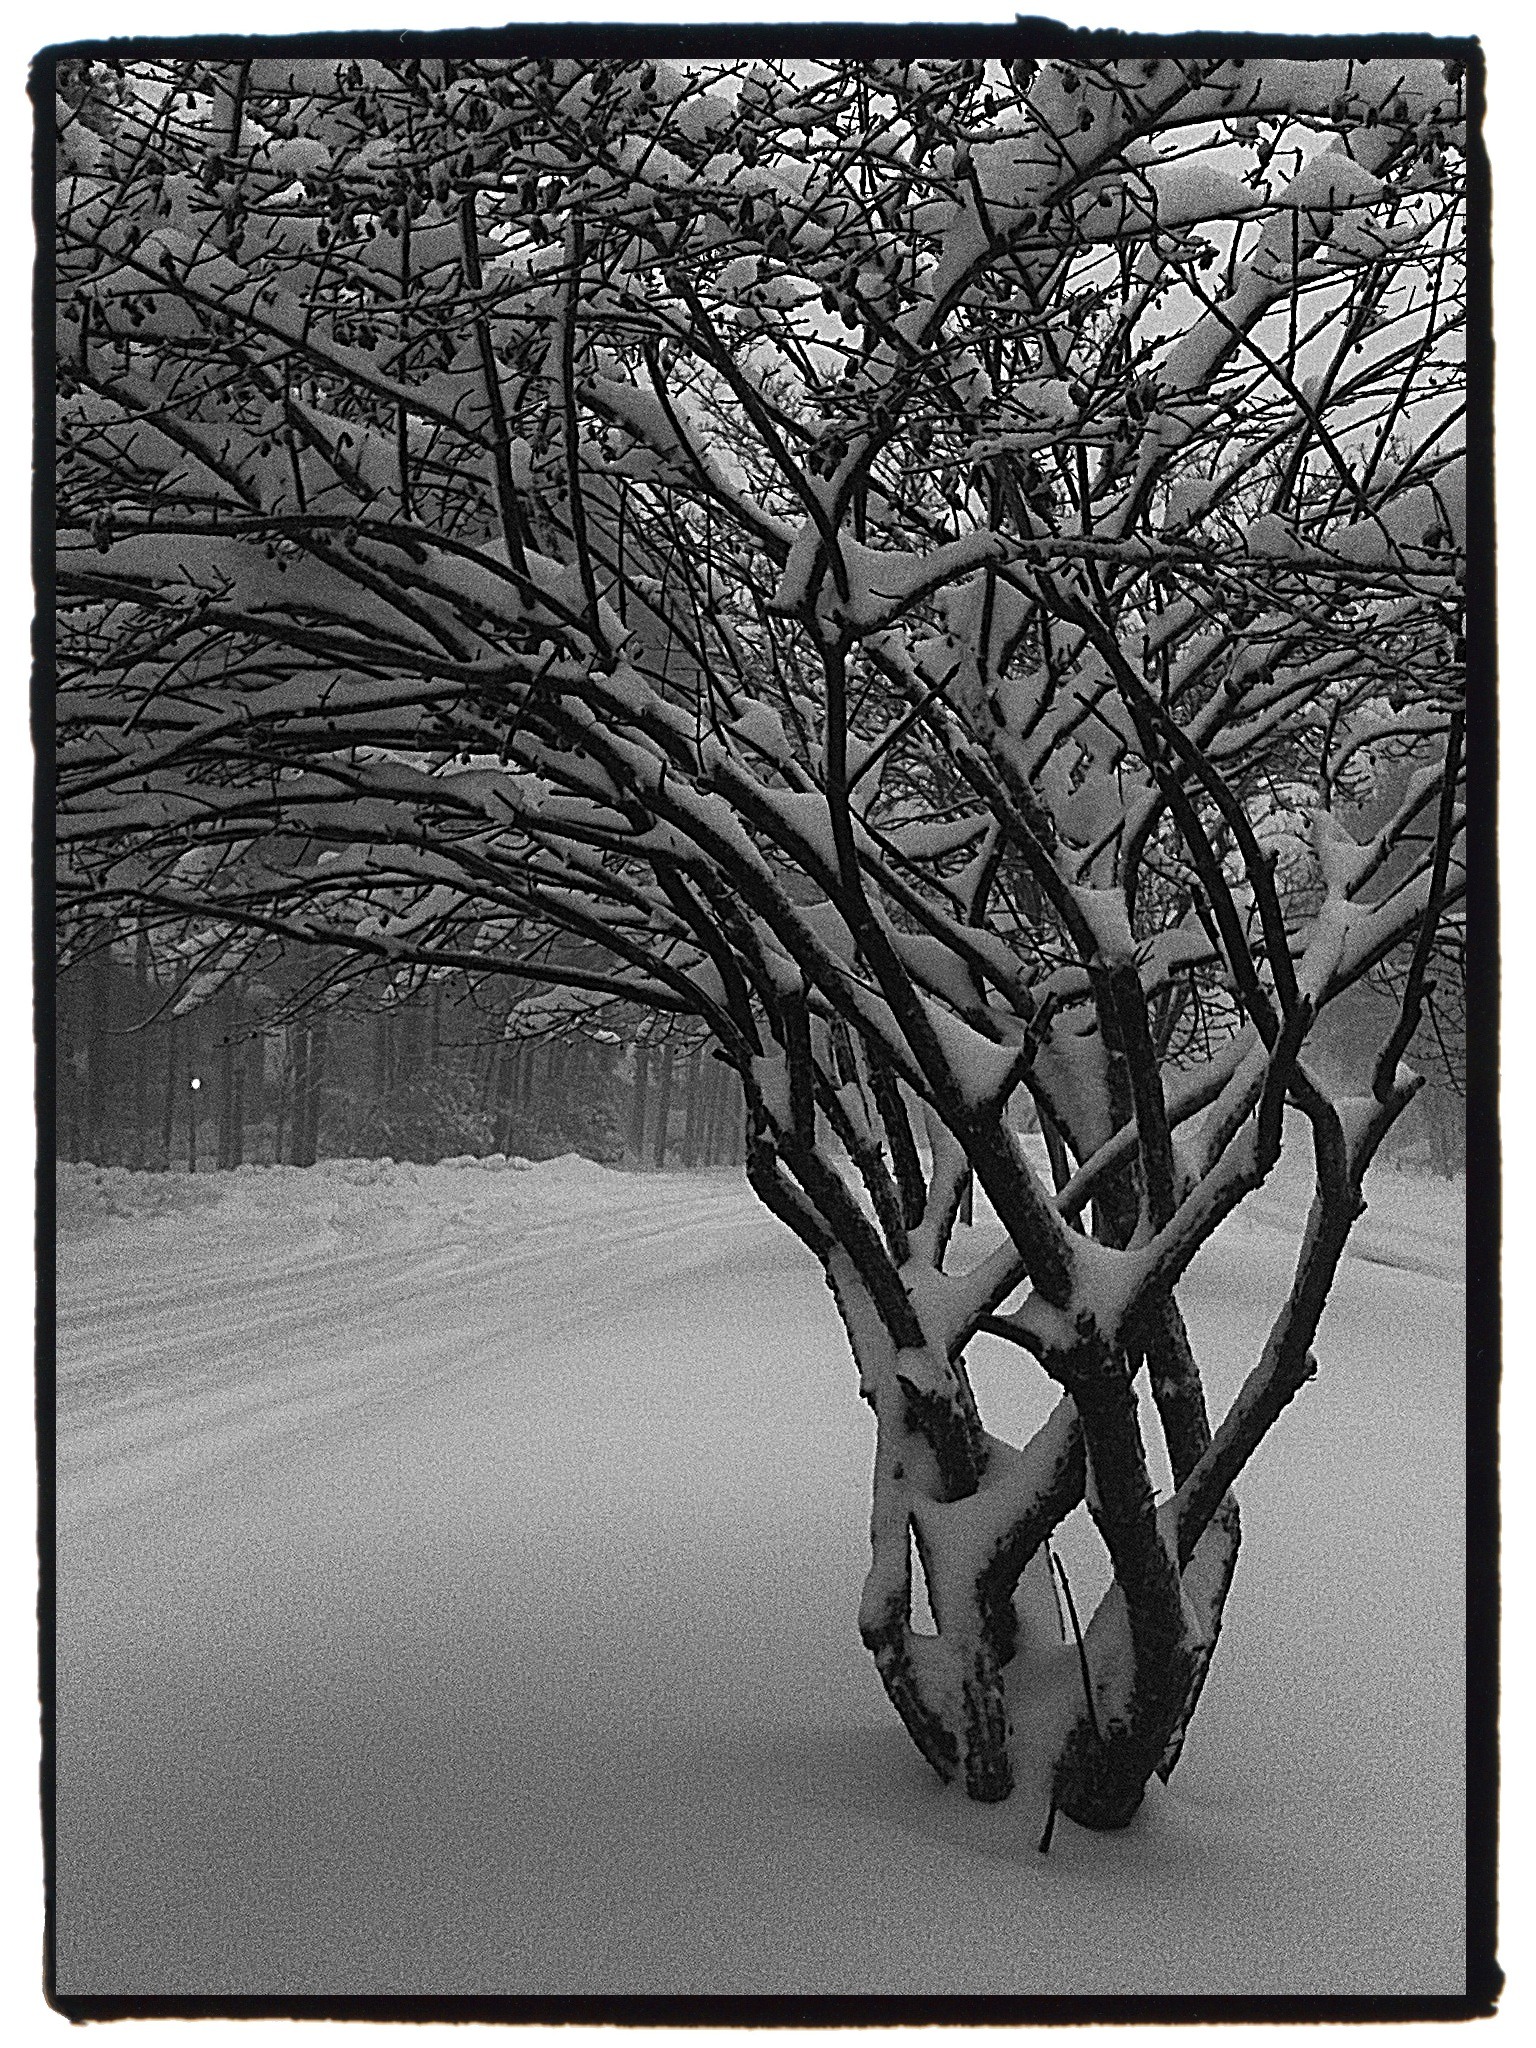 Feb 2010 Snow - Mobile photos